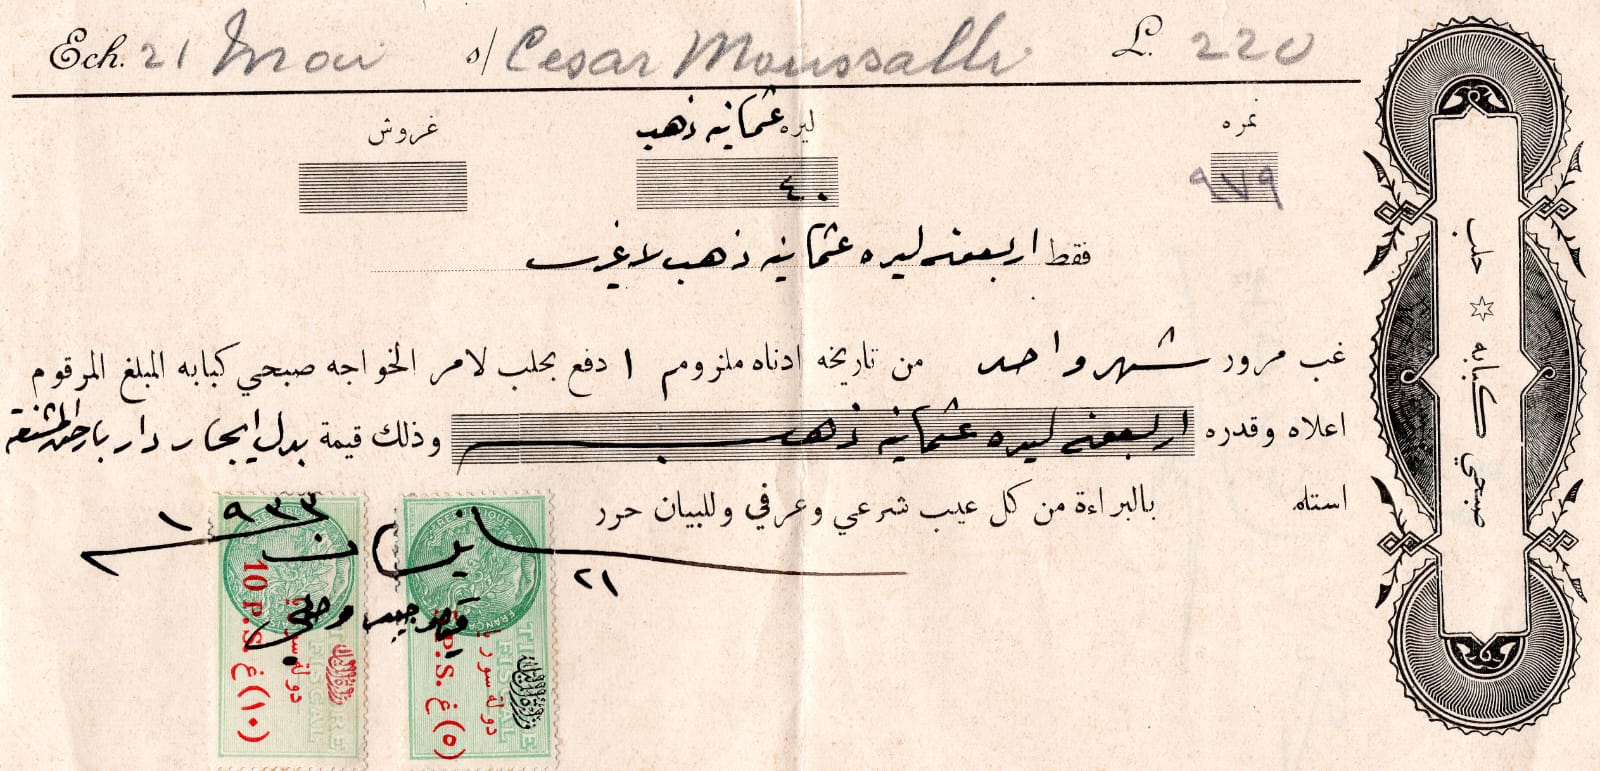 التاريخ السوري المعاصر - كمبيالة مالية بقيمة 40 ليرة ذهبية بدل إيجار دار  بأرض المشنقة - العزيزية في حلب 1933